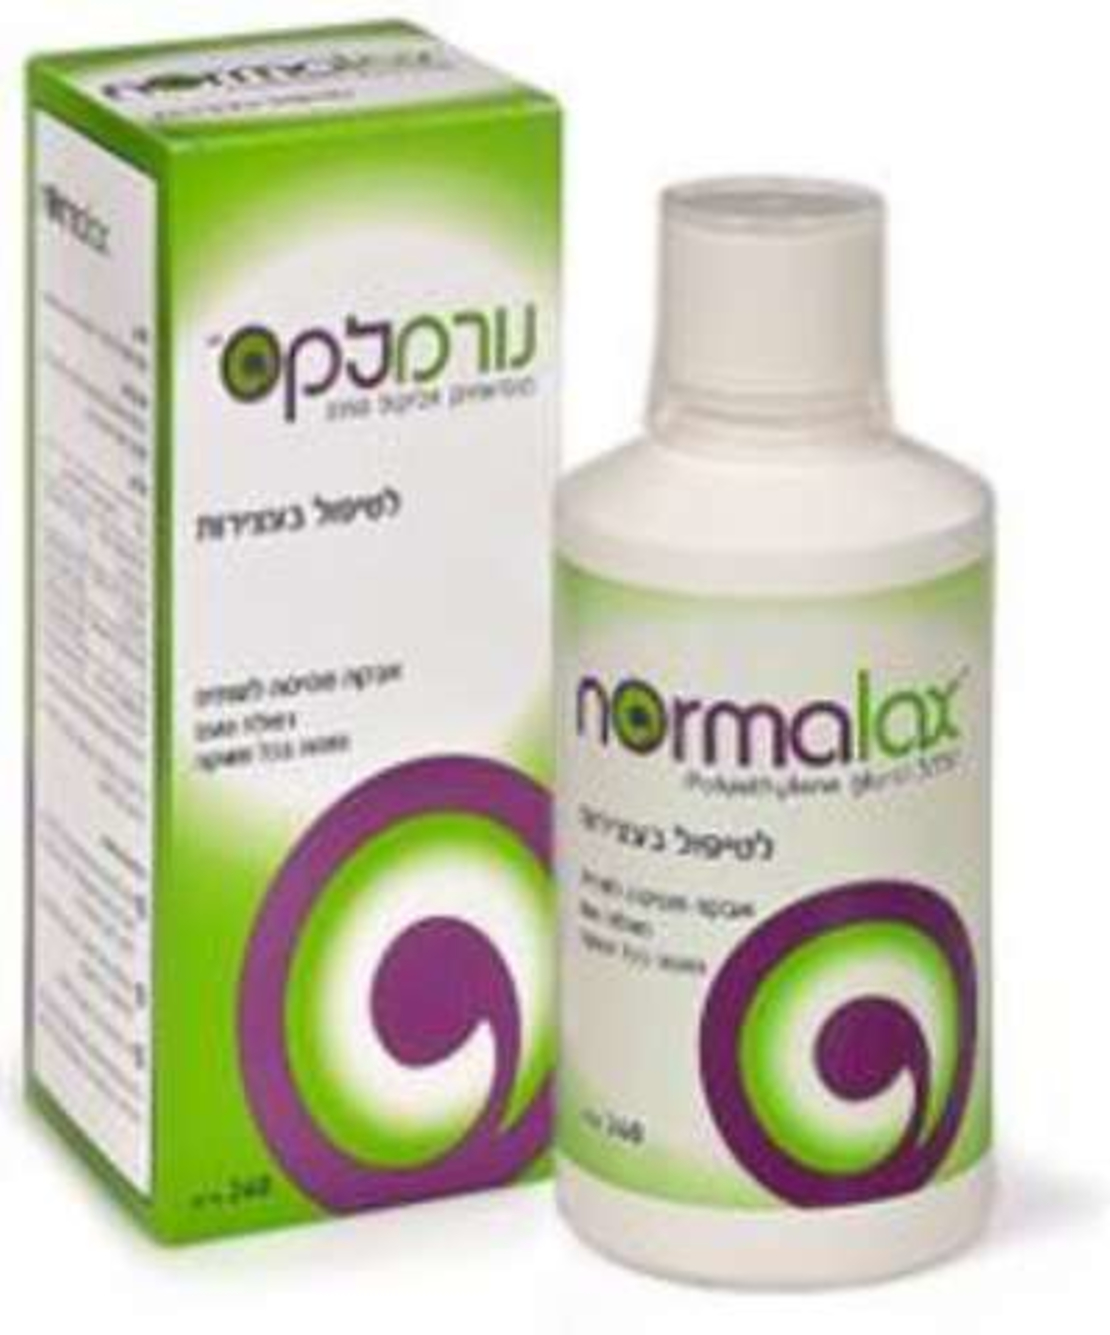 נורמלקס - תכשיר לטיפול בעצירות Normalax